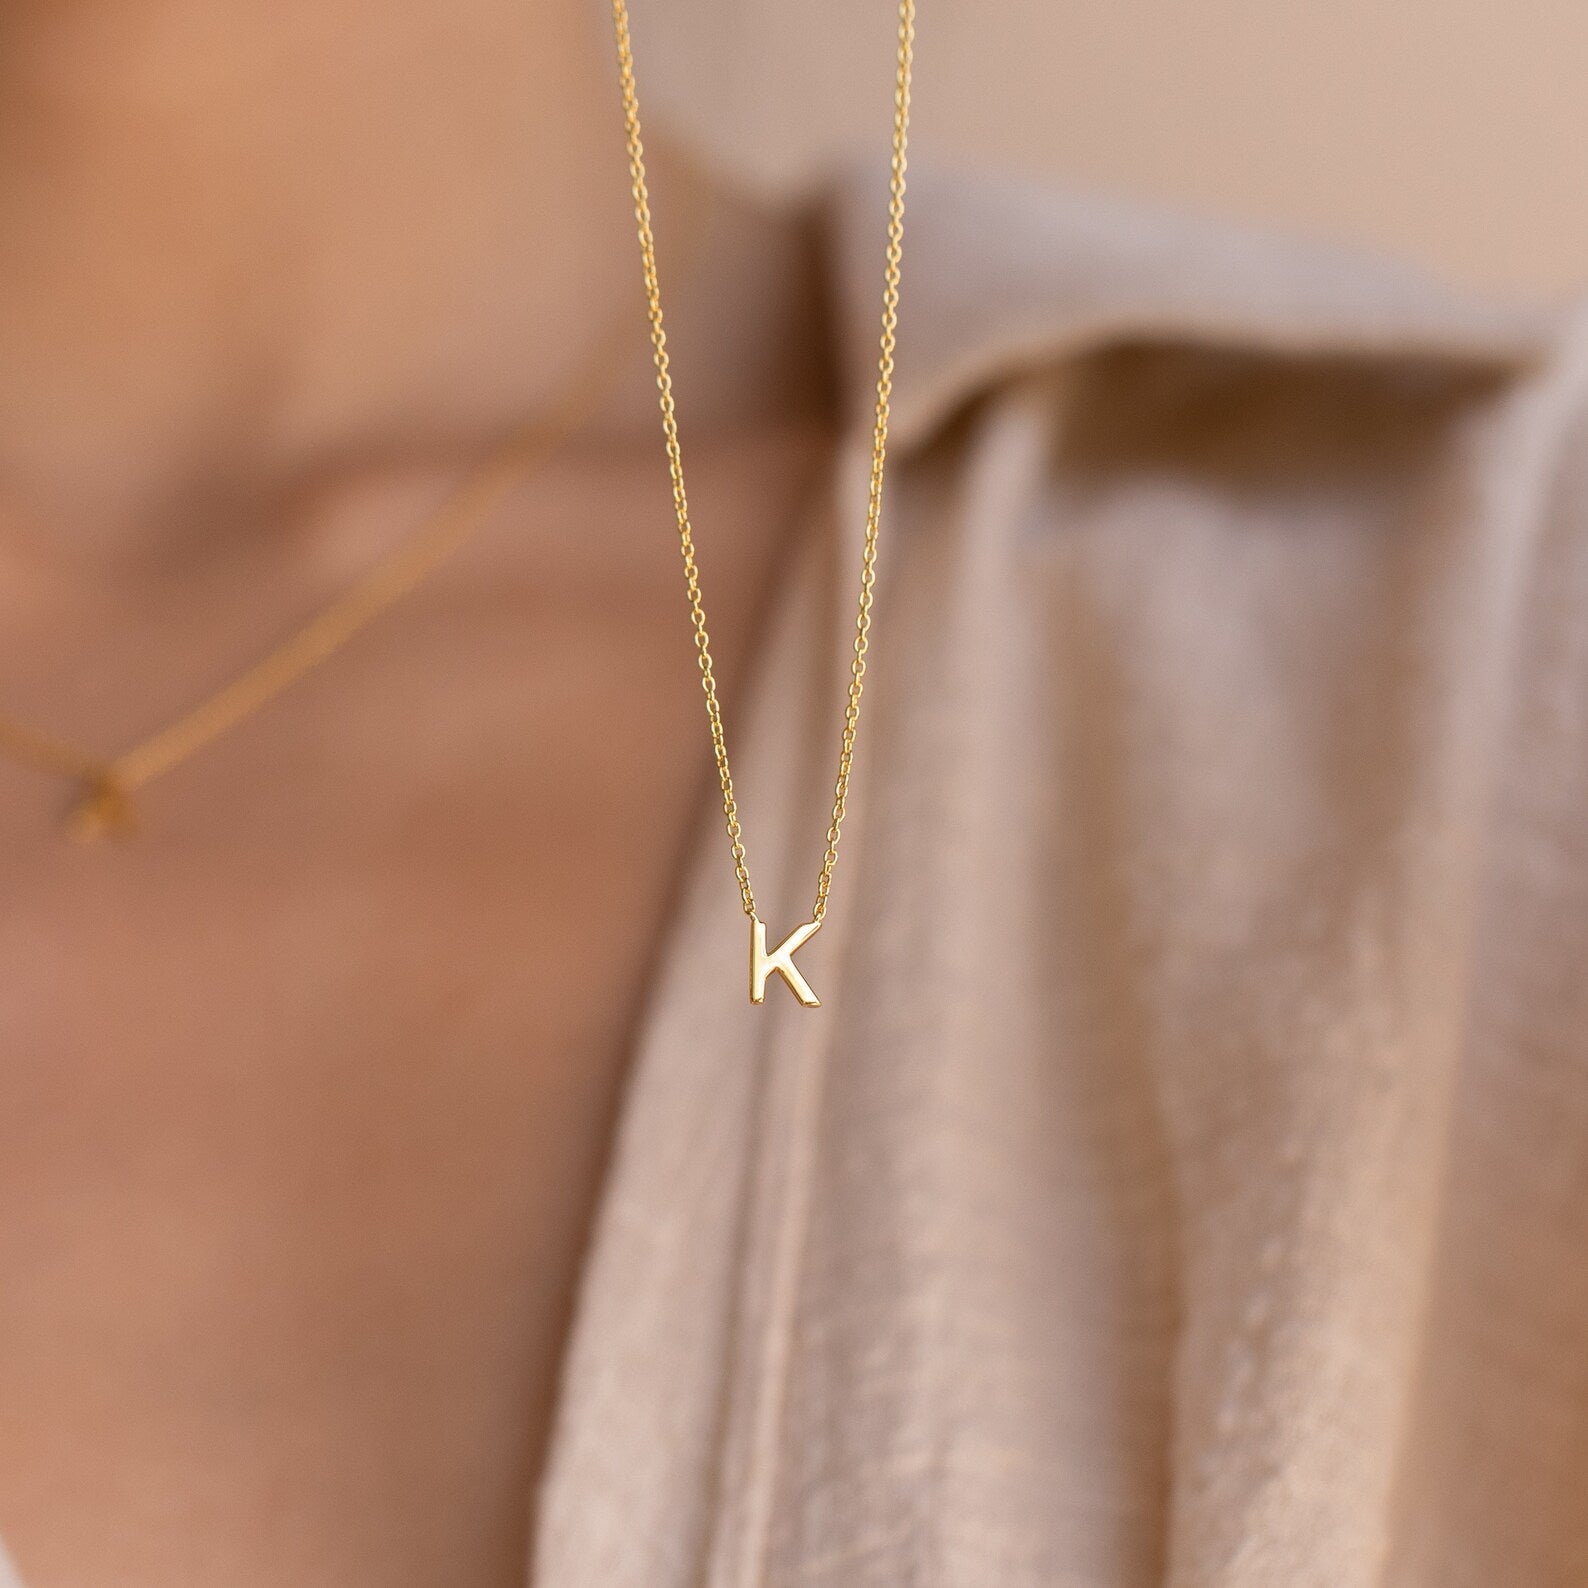 Zierliche Halskette mit Initialen - Stilvolle Halskette mit Buchstaben